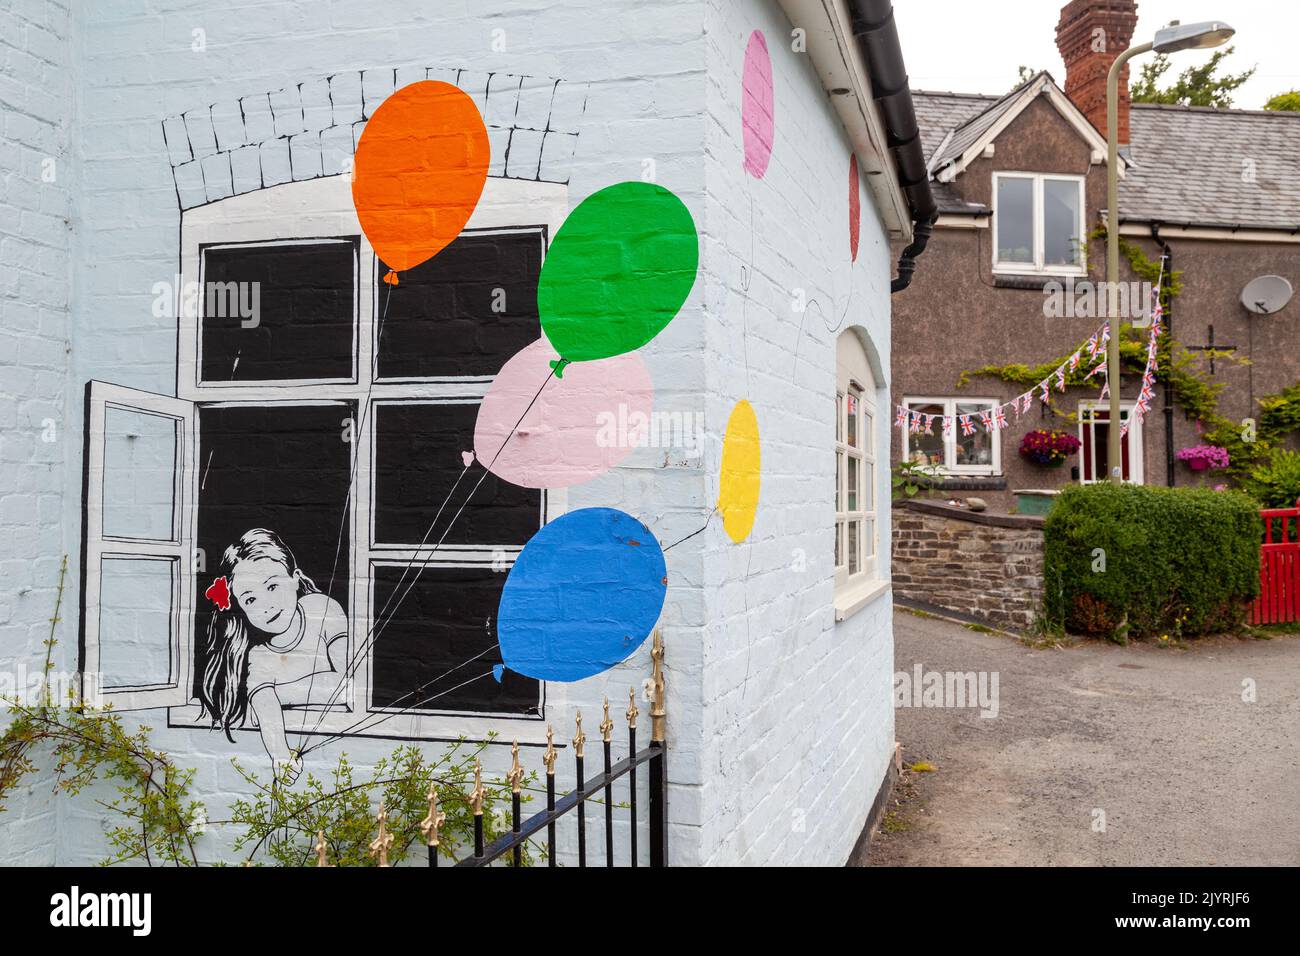 Arte graffiti in stile banksy di una ragazza con palloncini che si affaccia da una finestra su una casa nel castello episcopale. Foto Stock